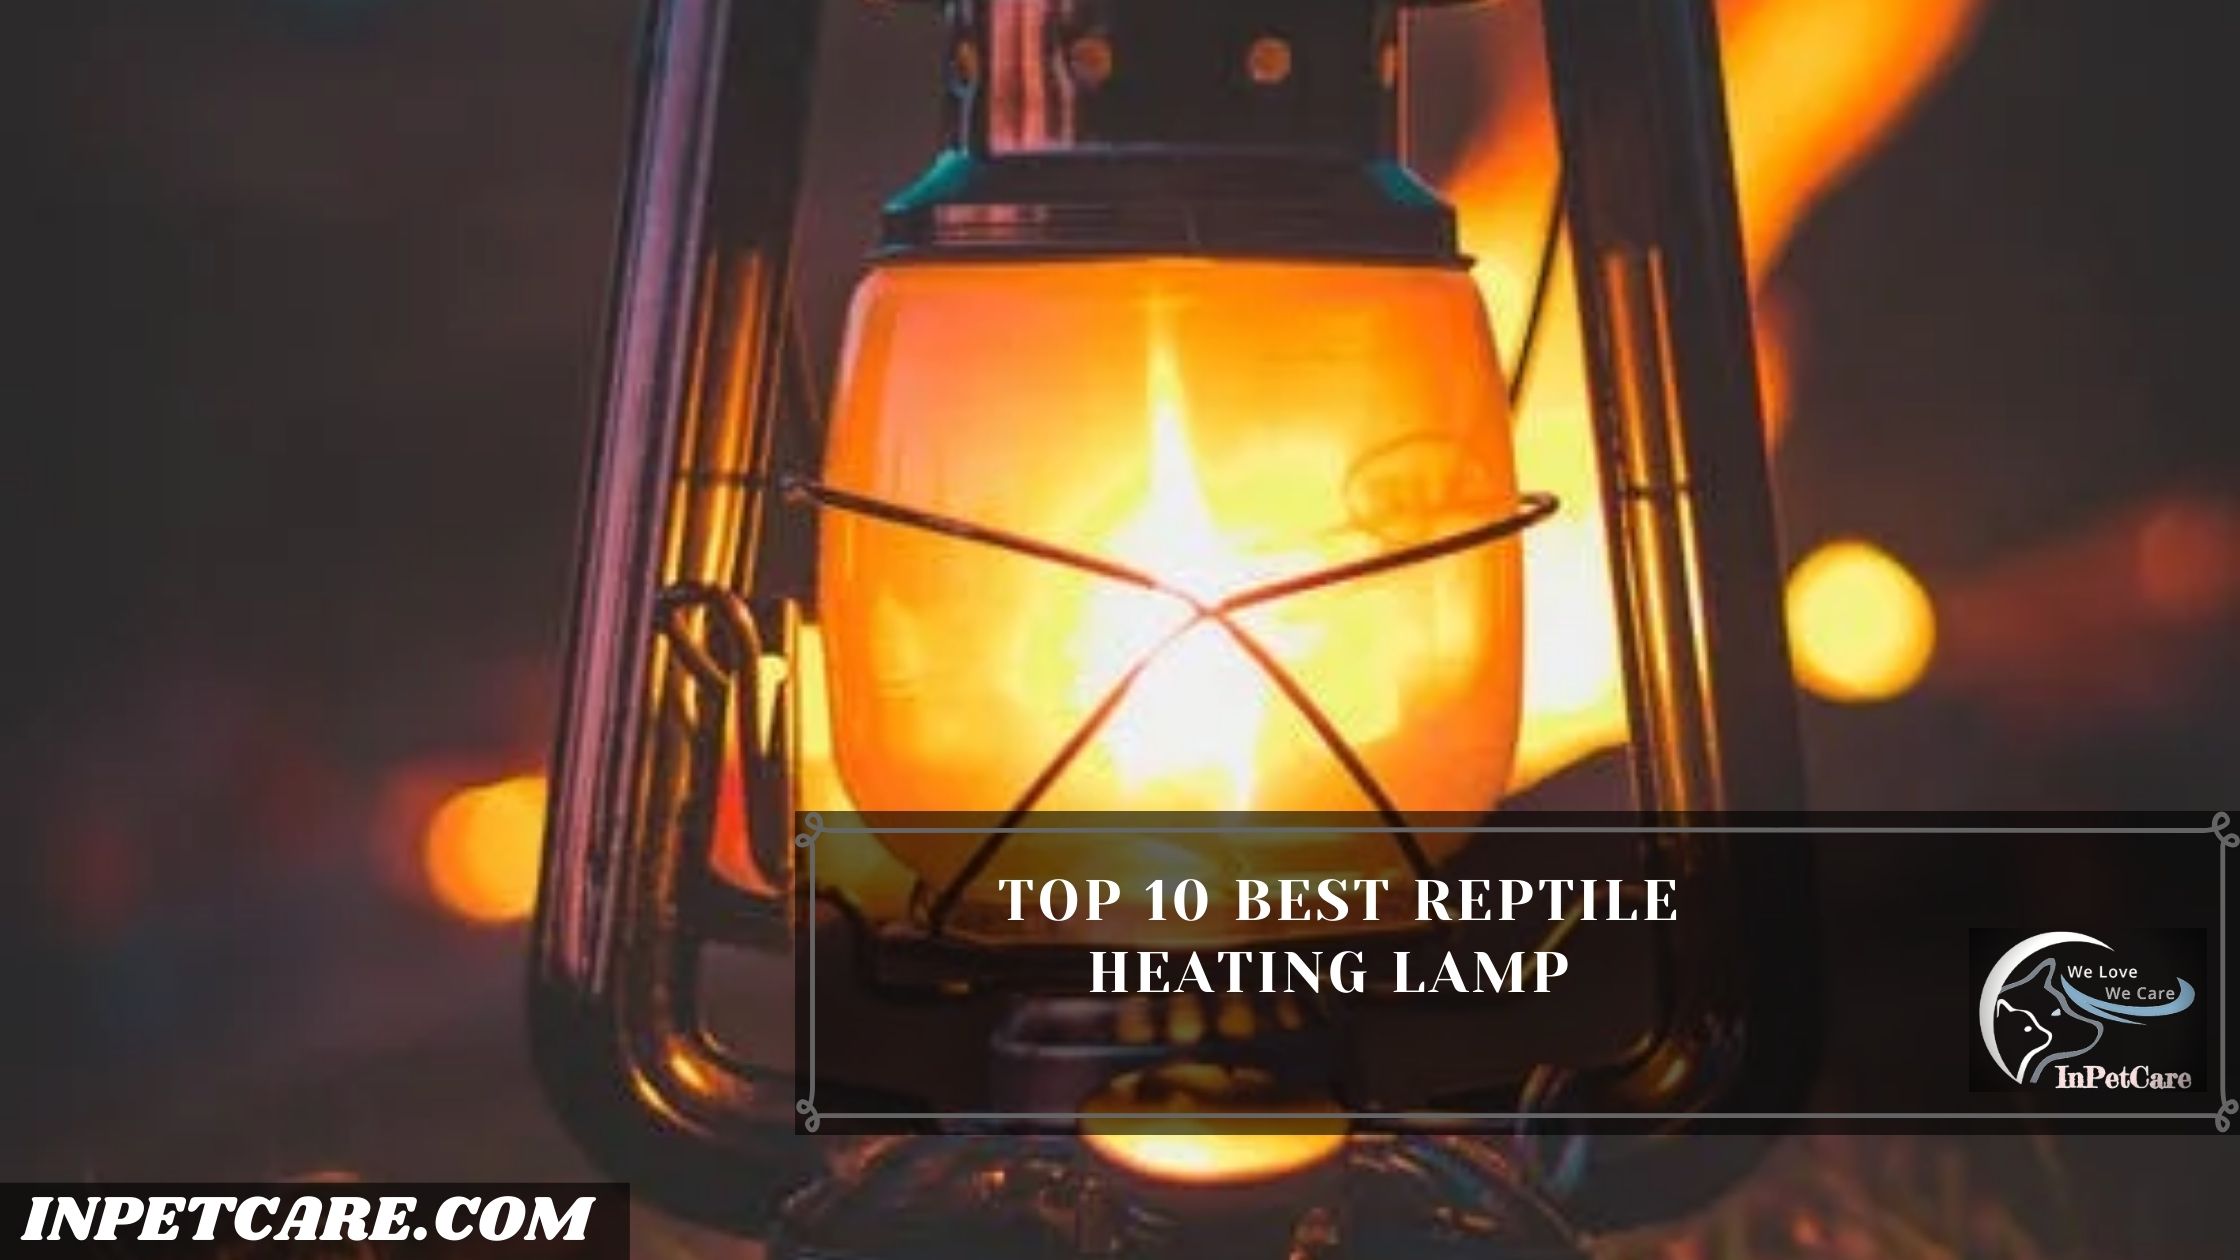 Top 10 Best Reptile Heating Lamp 